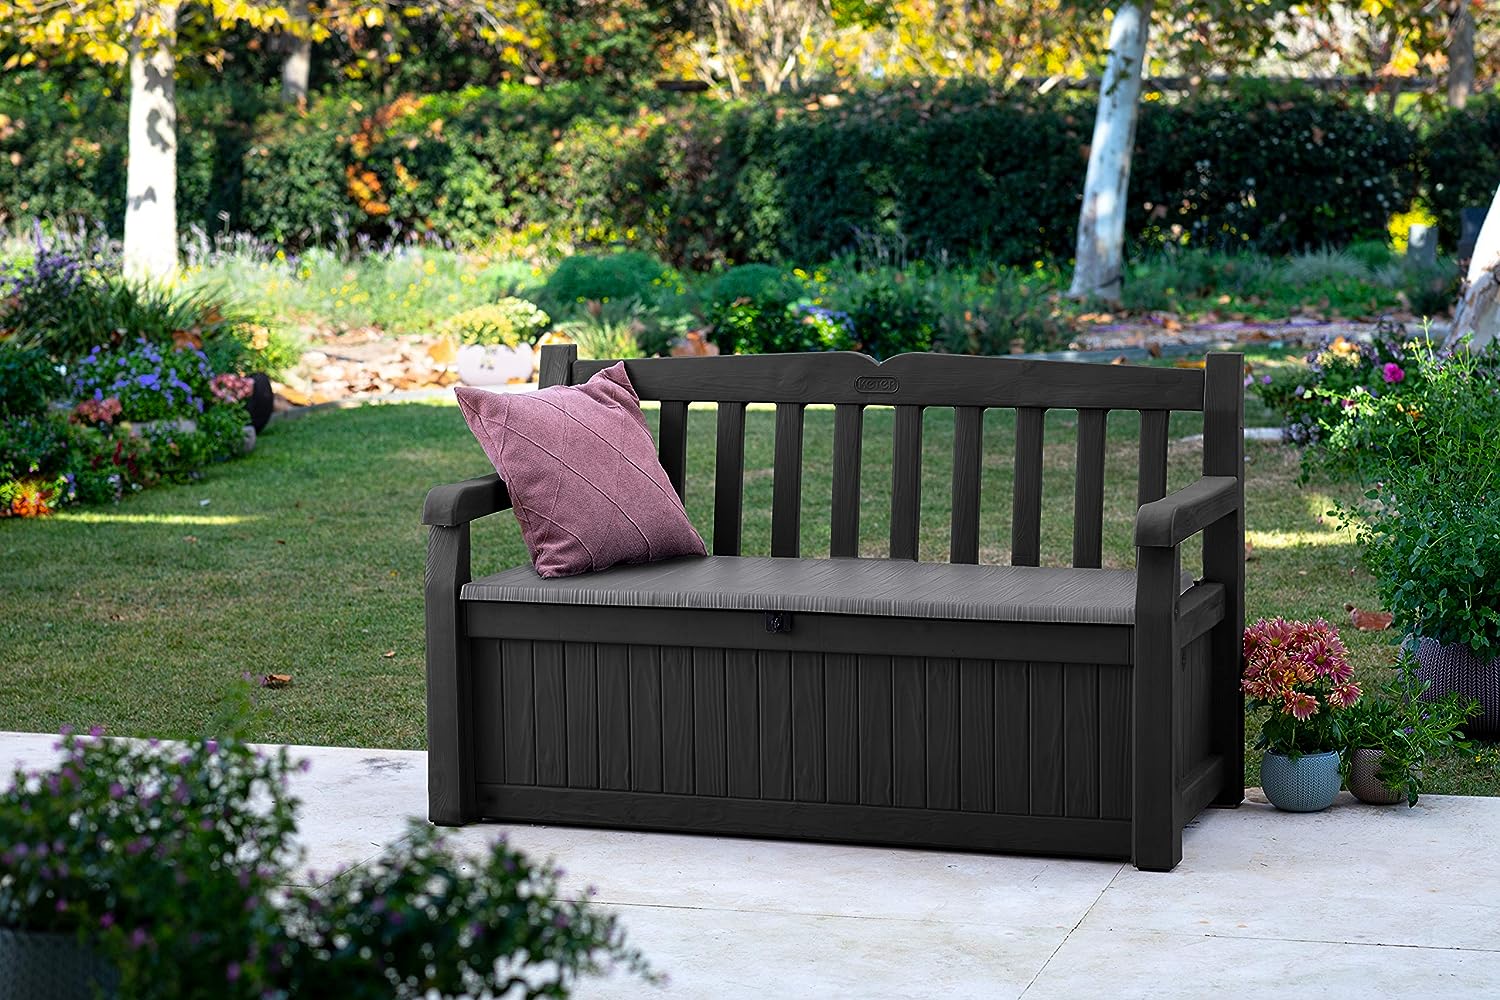 Dark wooden garden bench with storage compartment.